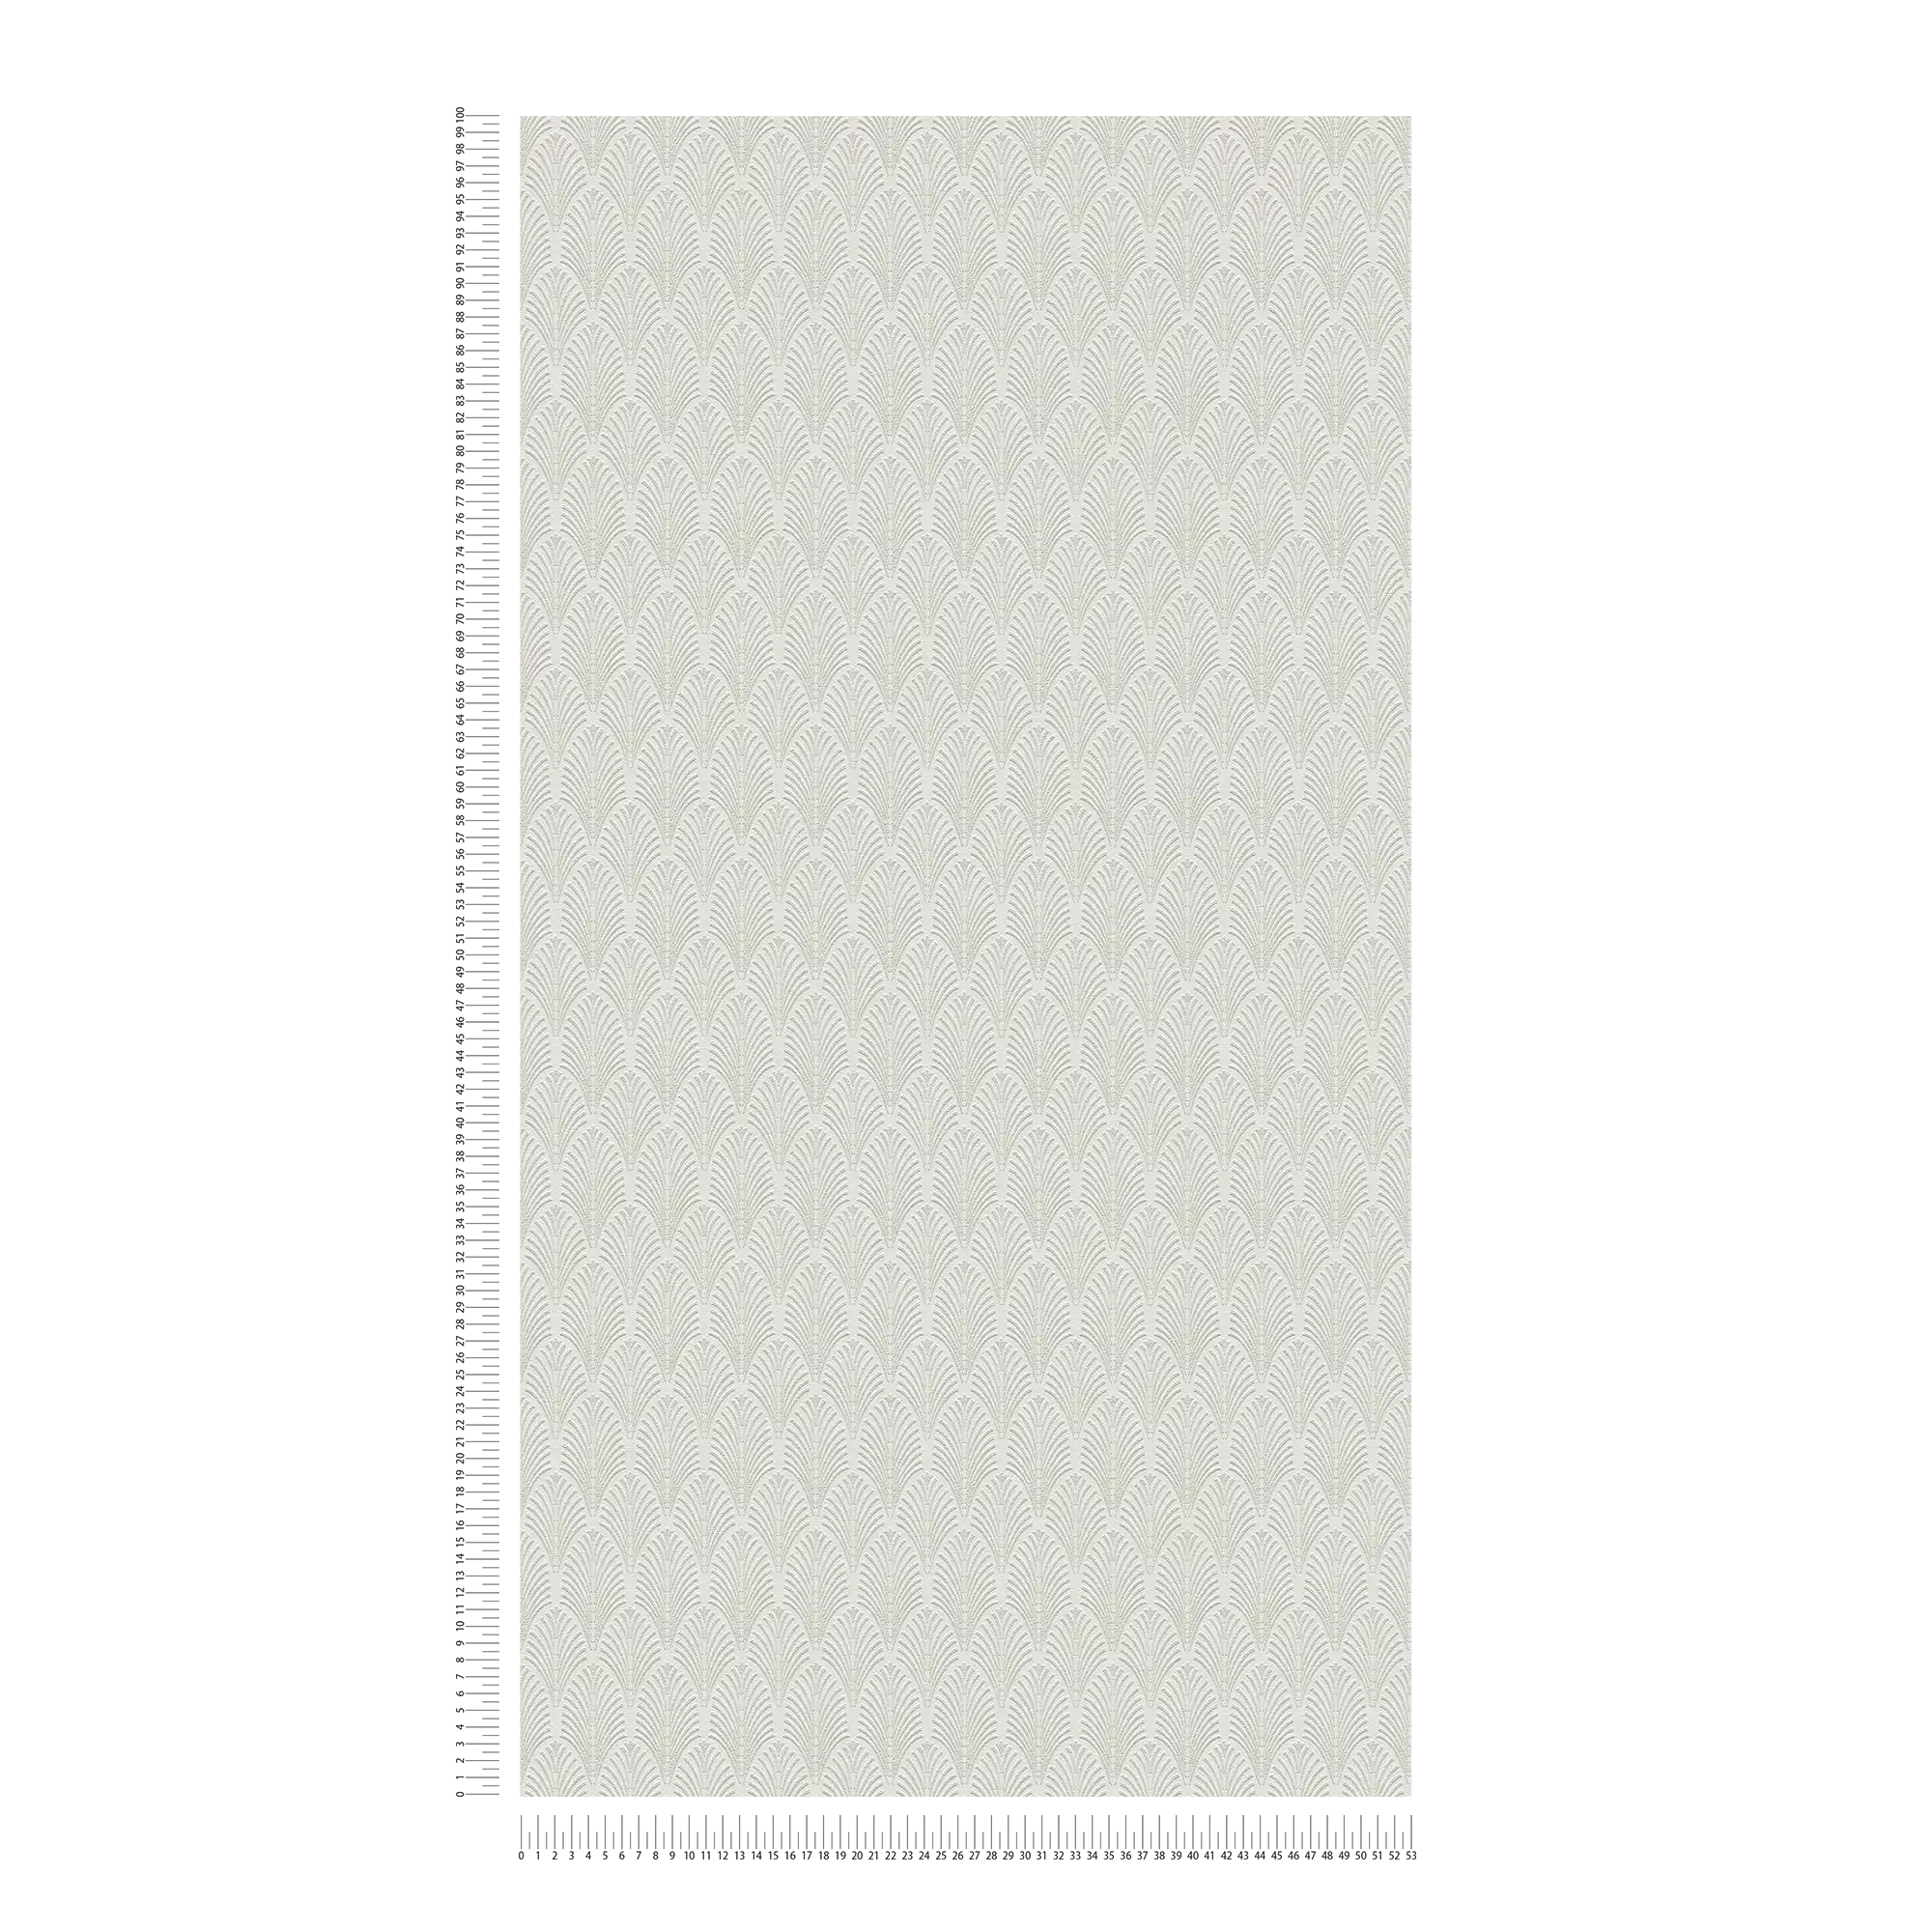             Carta da parati metallizzata in stile art déco - bianco, argento
        